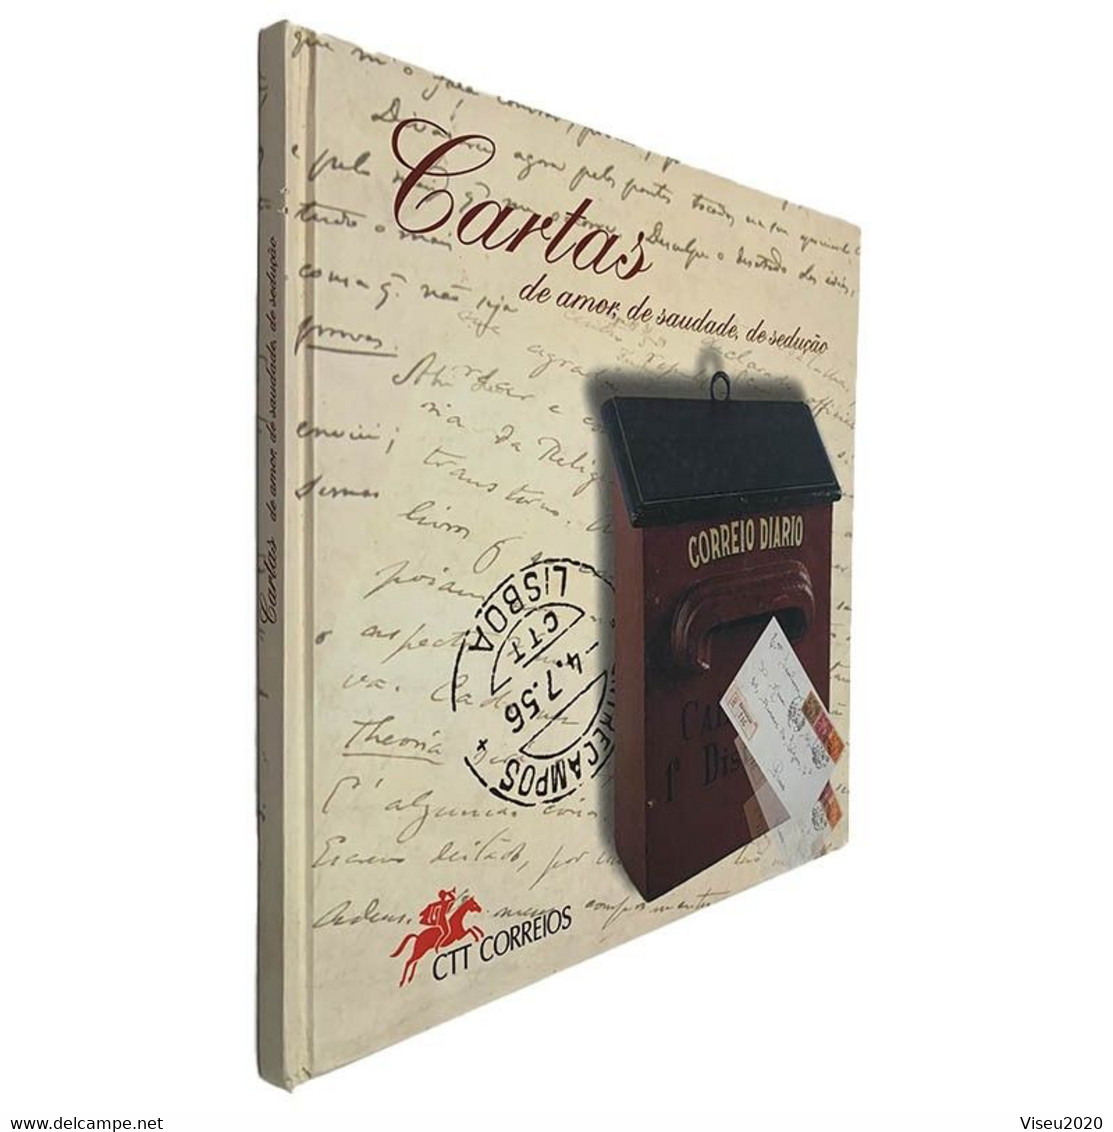 Portugal 1997 Cartas De Amor, De Saudade, De Sedução - LIVRO TEMATICO CTT - Livre De L'année